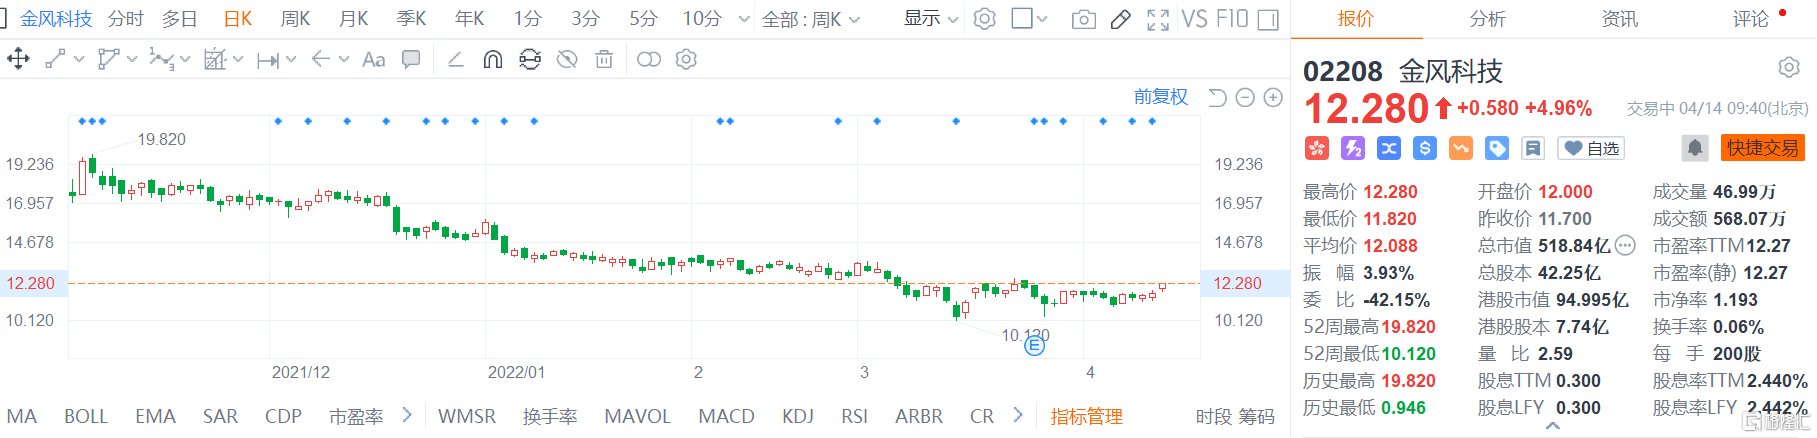 金风科技(2208.HK)高开高走现报12.28港元 总市值518.8亿港元